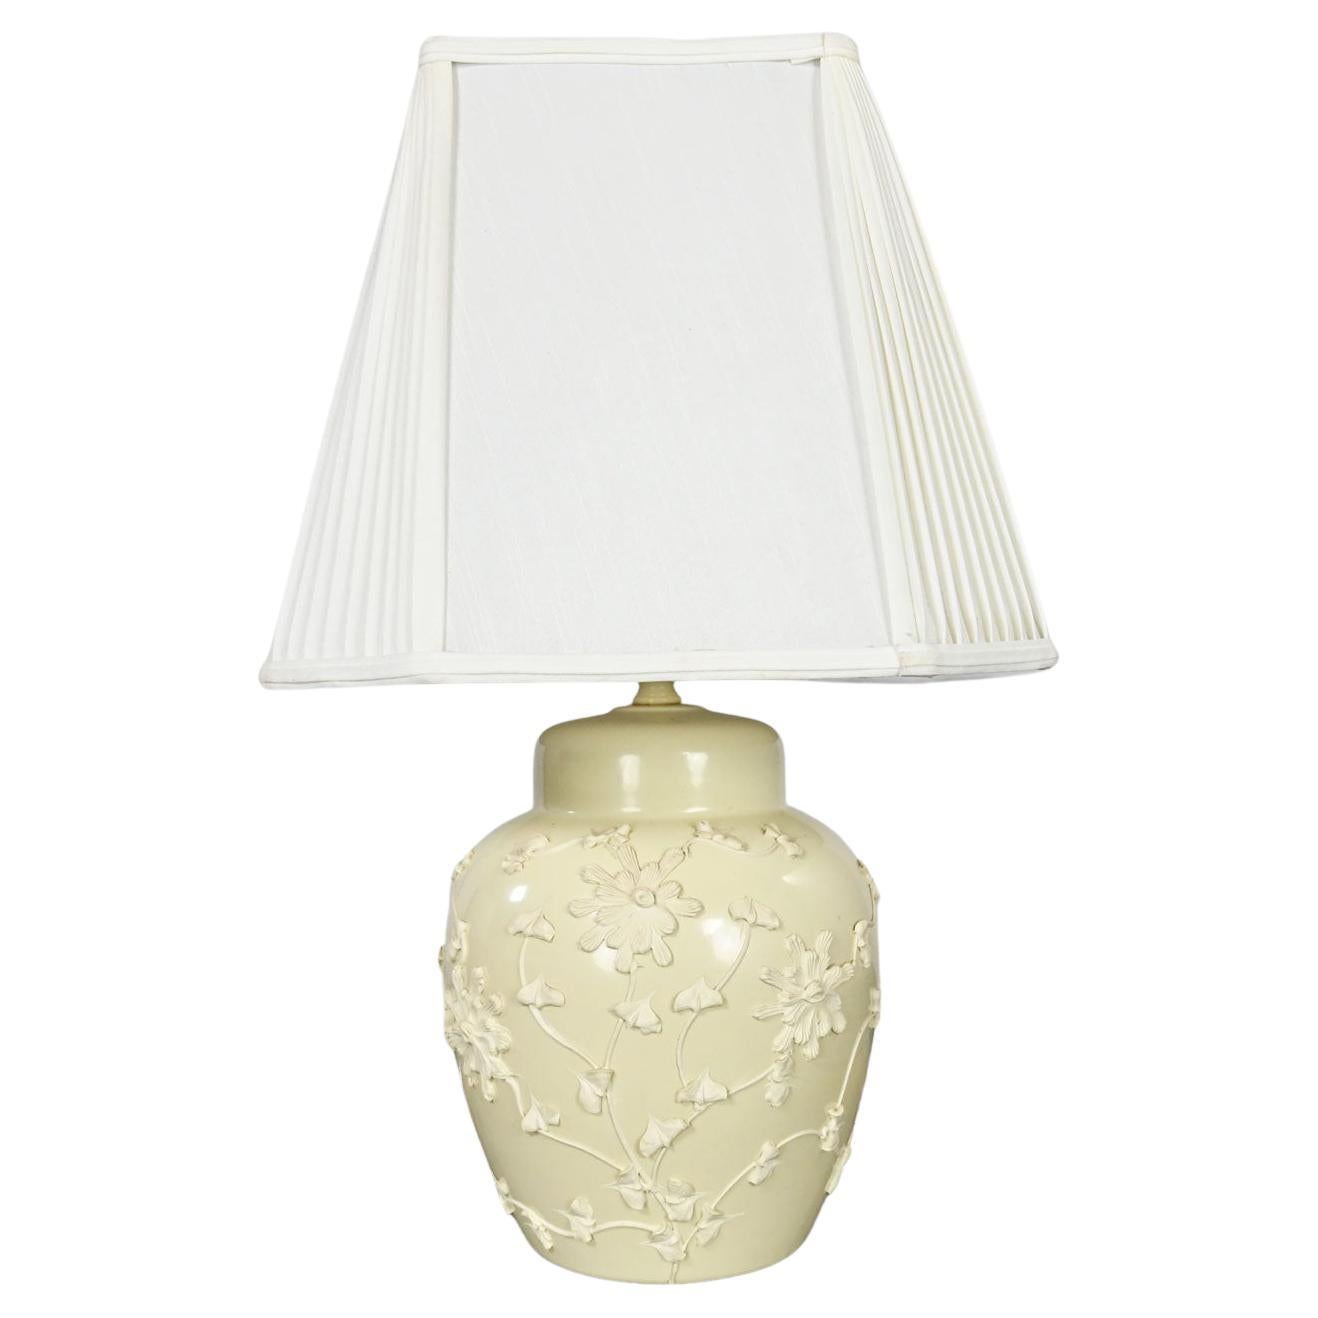 Chinoiserie Latte Clr Ingwerglas-Lampe, Milchglas-Lampe, mattiertes Design, plissierter weißer Stoffschirm